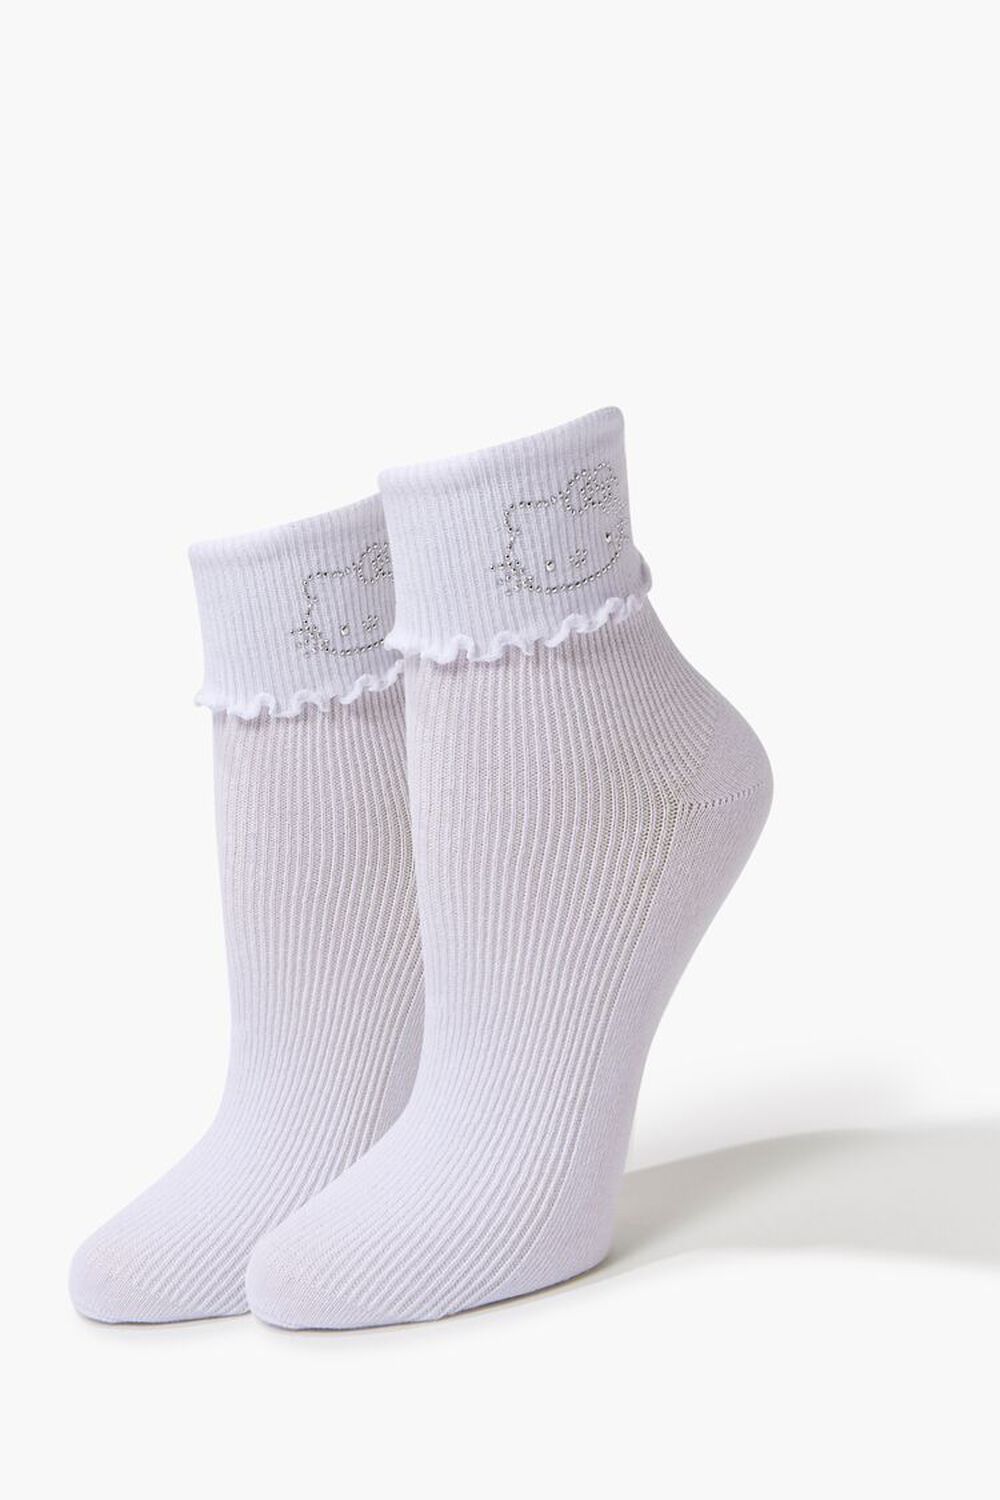 WHITE Rhinestone Hello Kitty Crew Socks, image 1